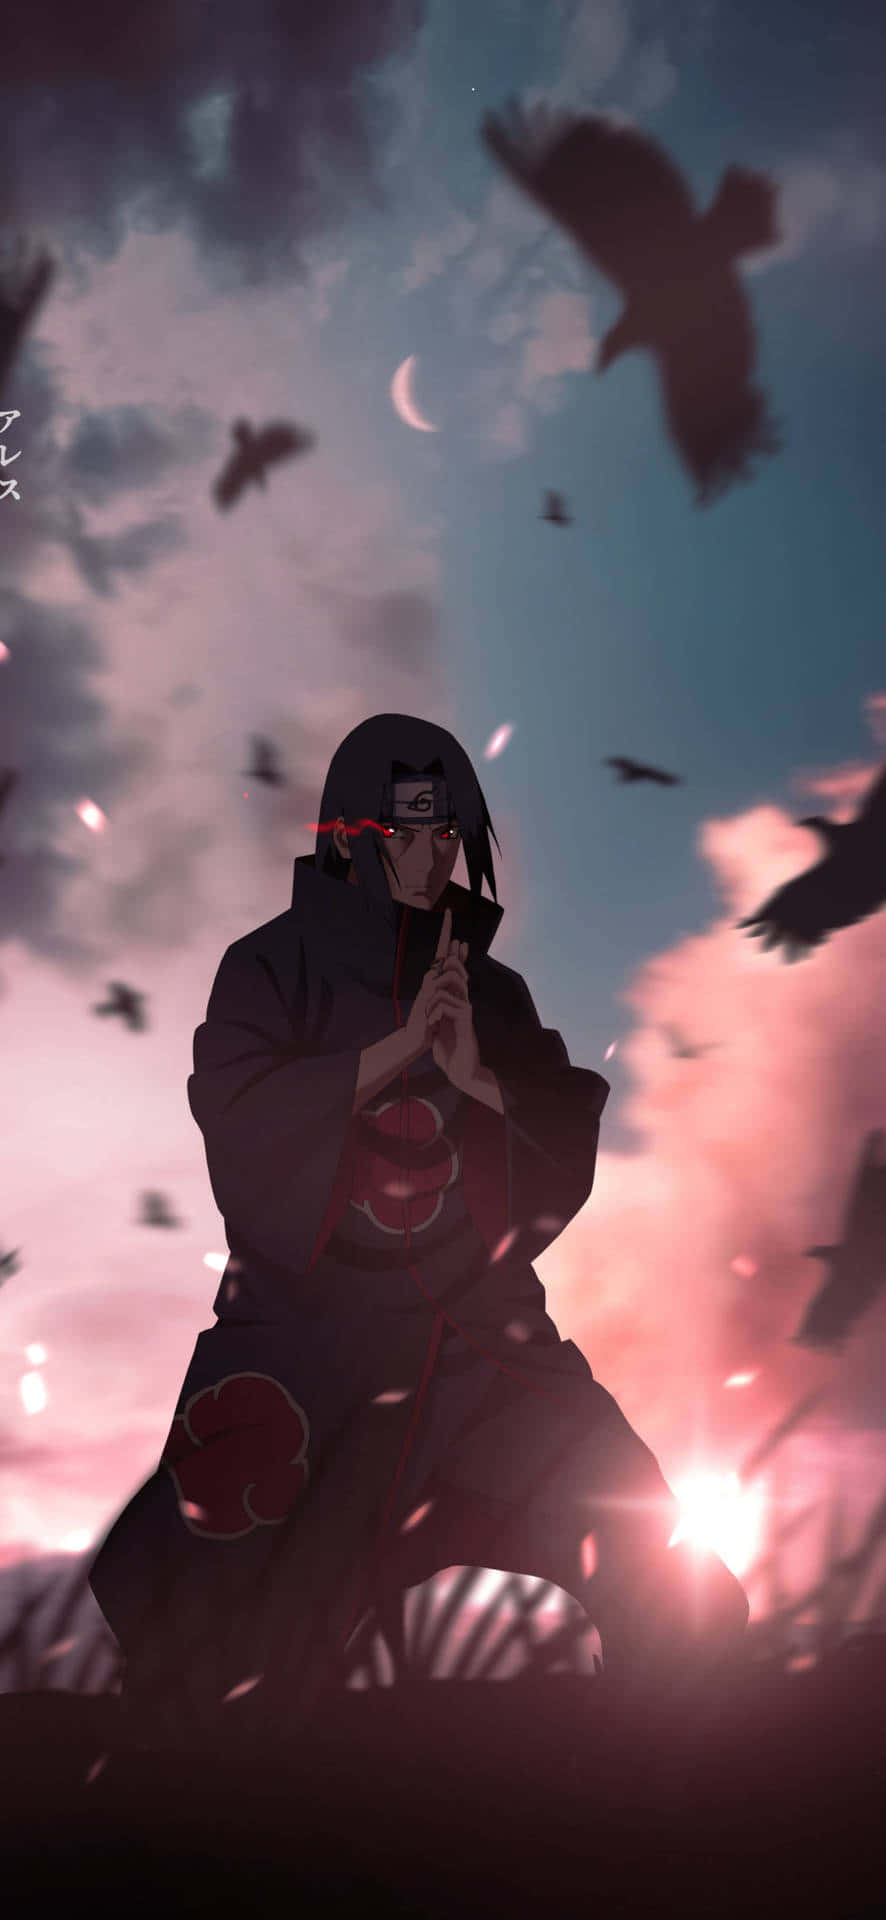 "itachi Uchiha, The Prodigy Ninja"